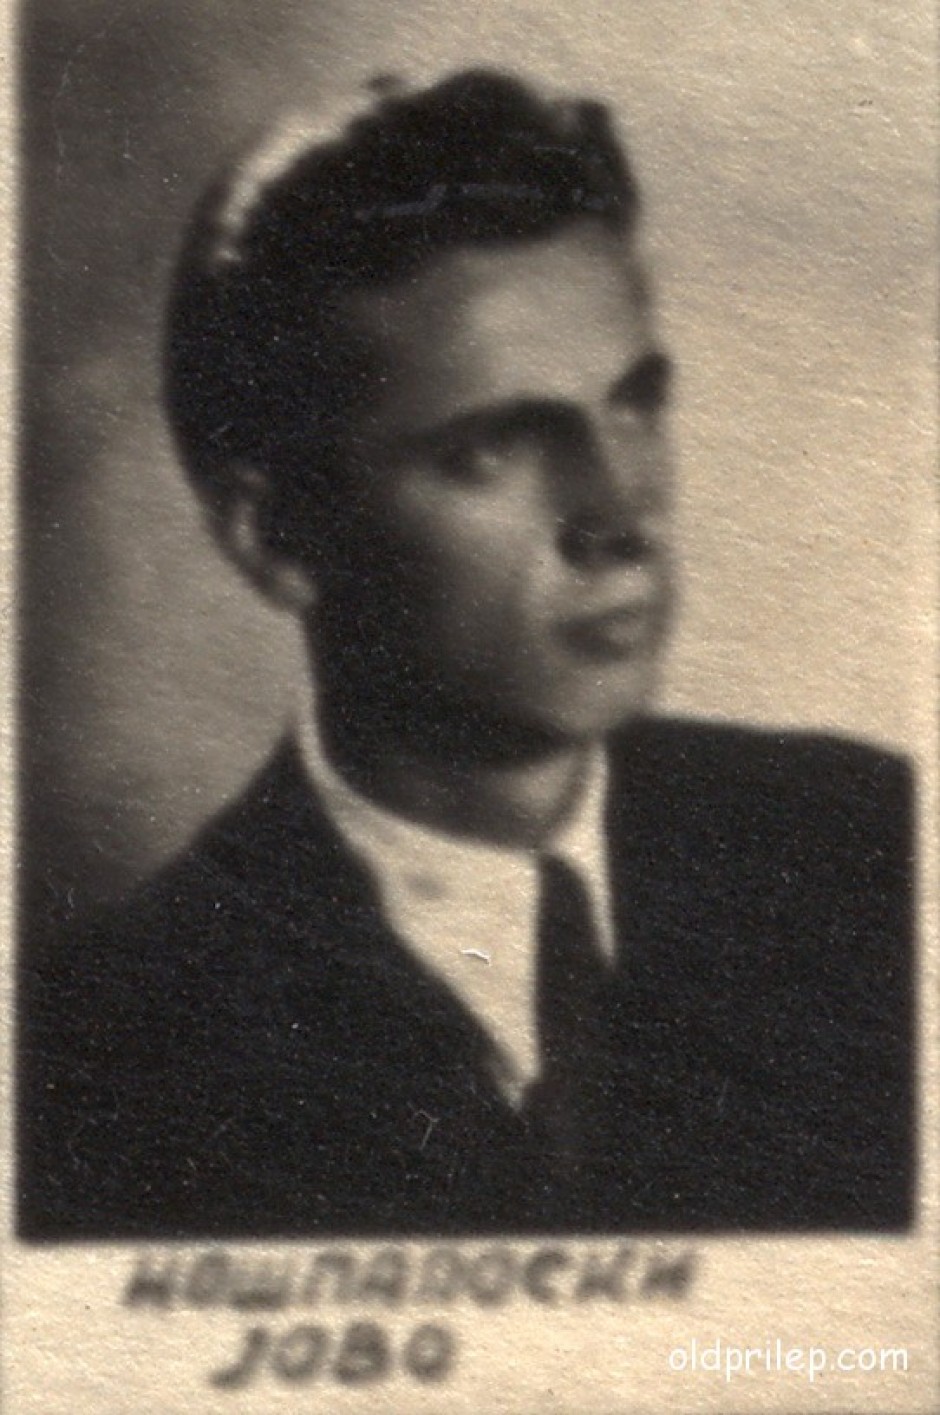 1950: Јован Ношпал како матурант